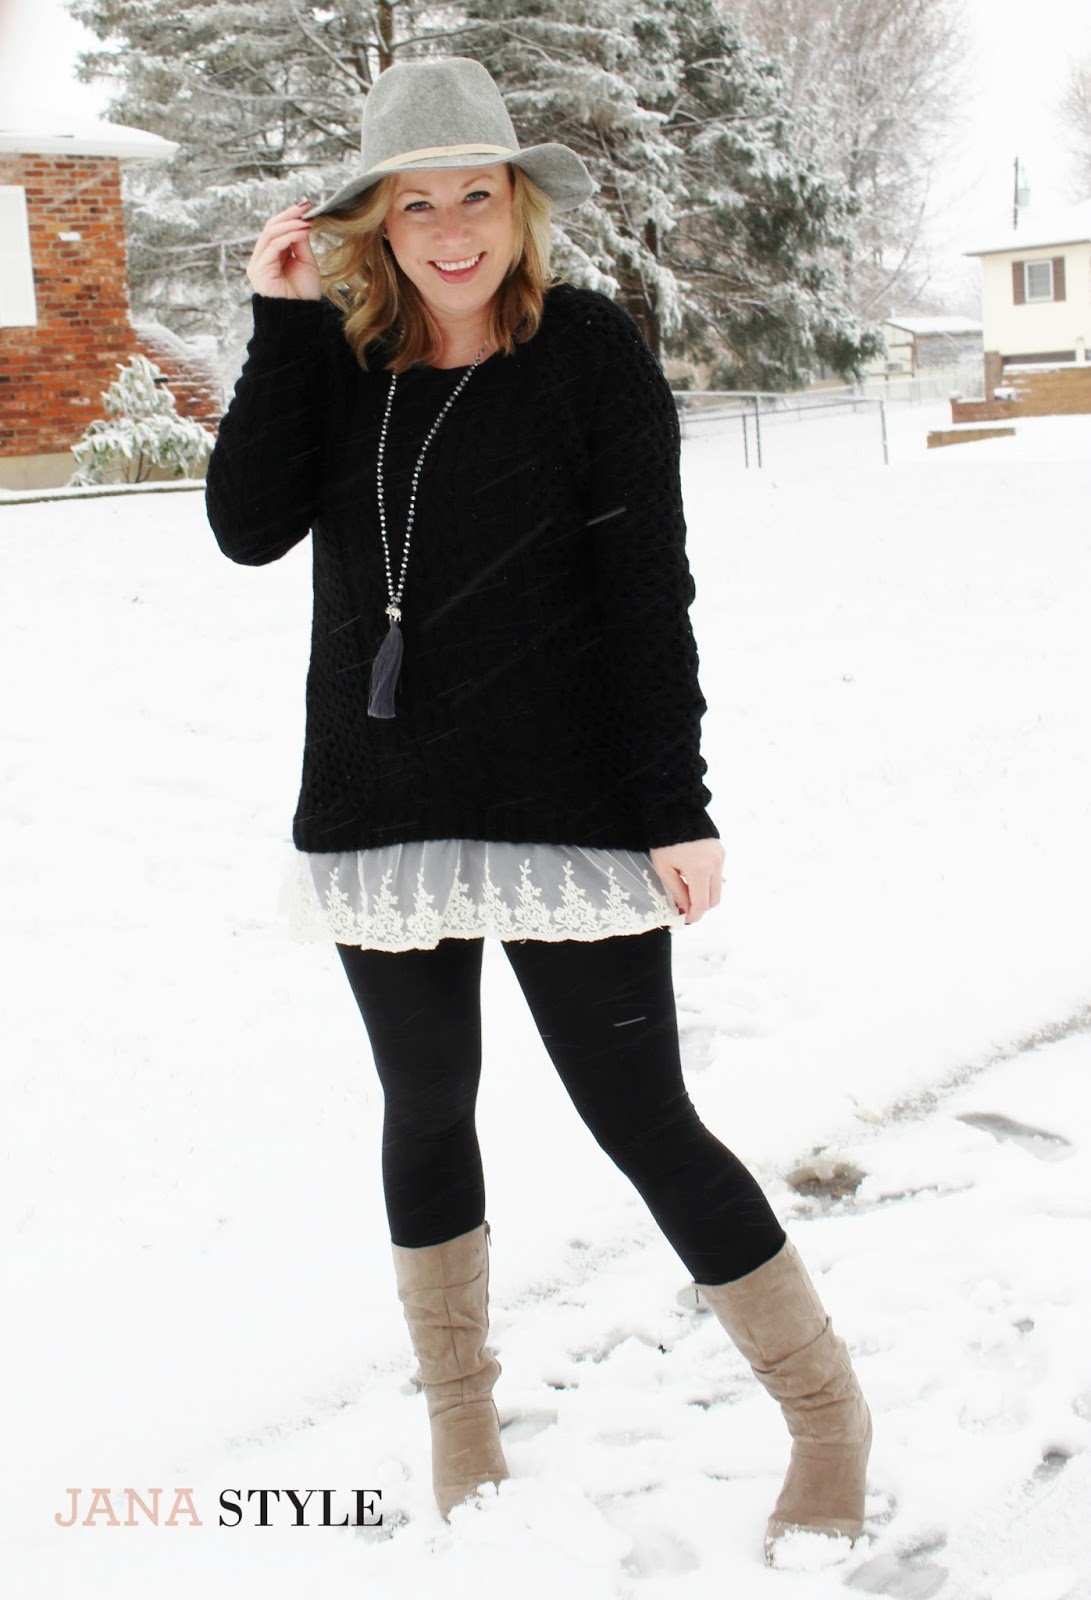 Winter Style | Lace Sweater Love | JANA STYLE® | A Fashion + Style Blog